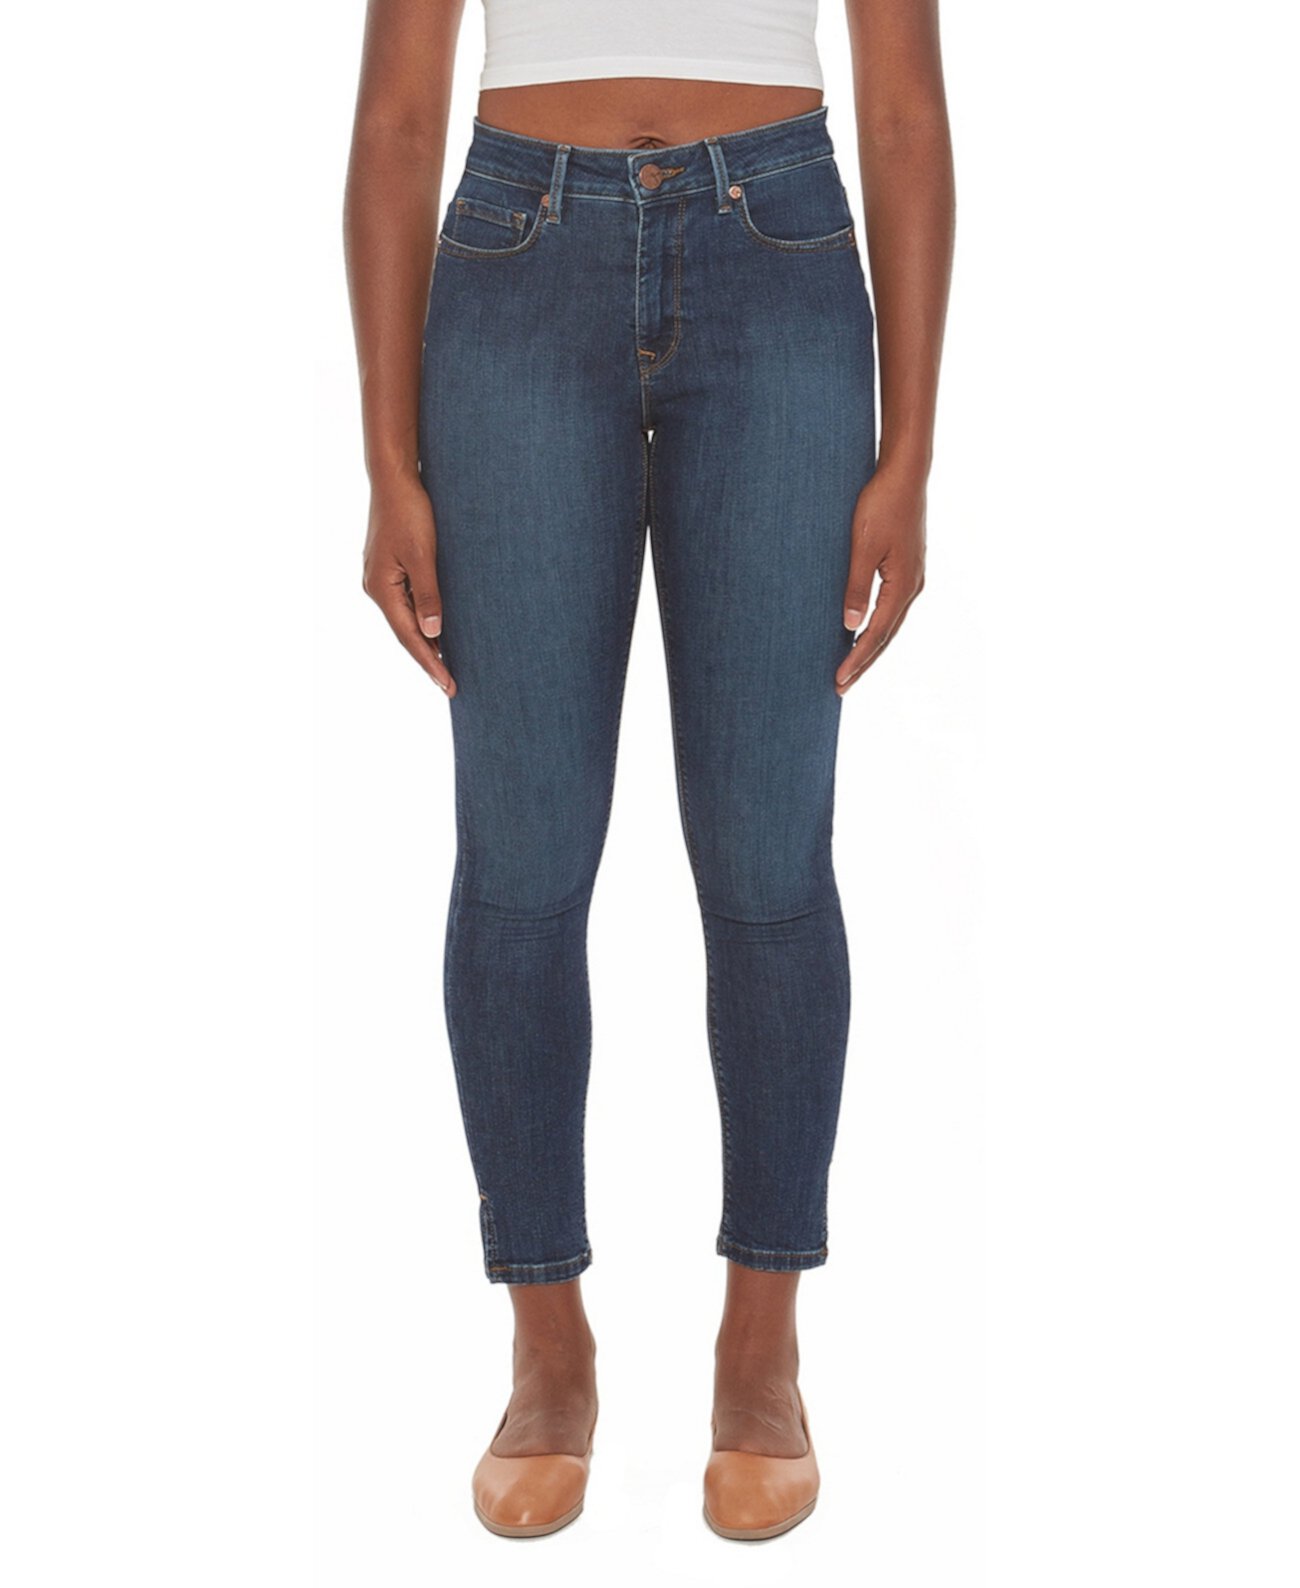 Женские джинсы скинни со средней посадкой Lola Jeans